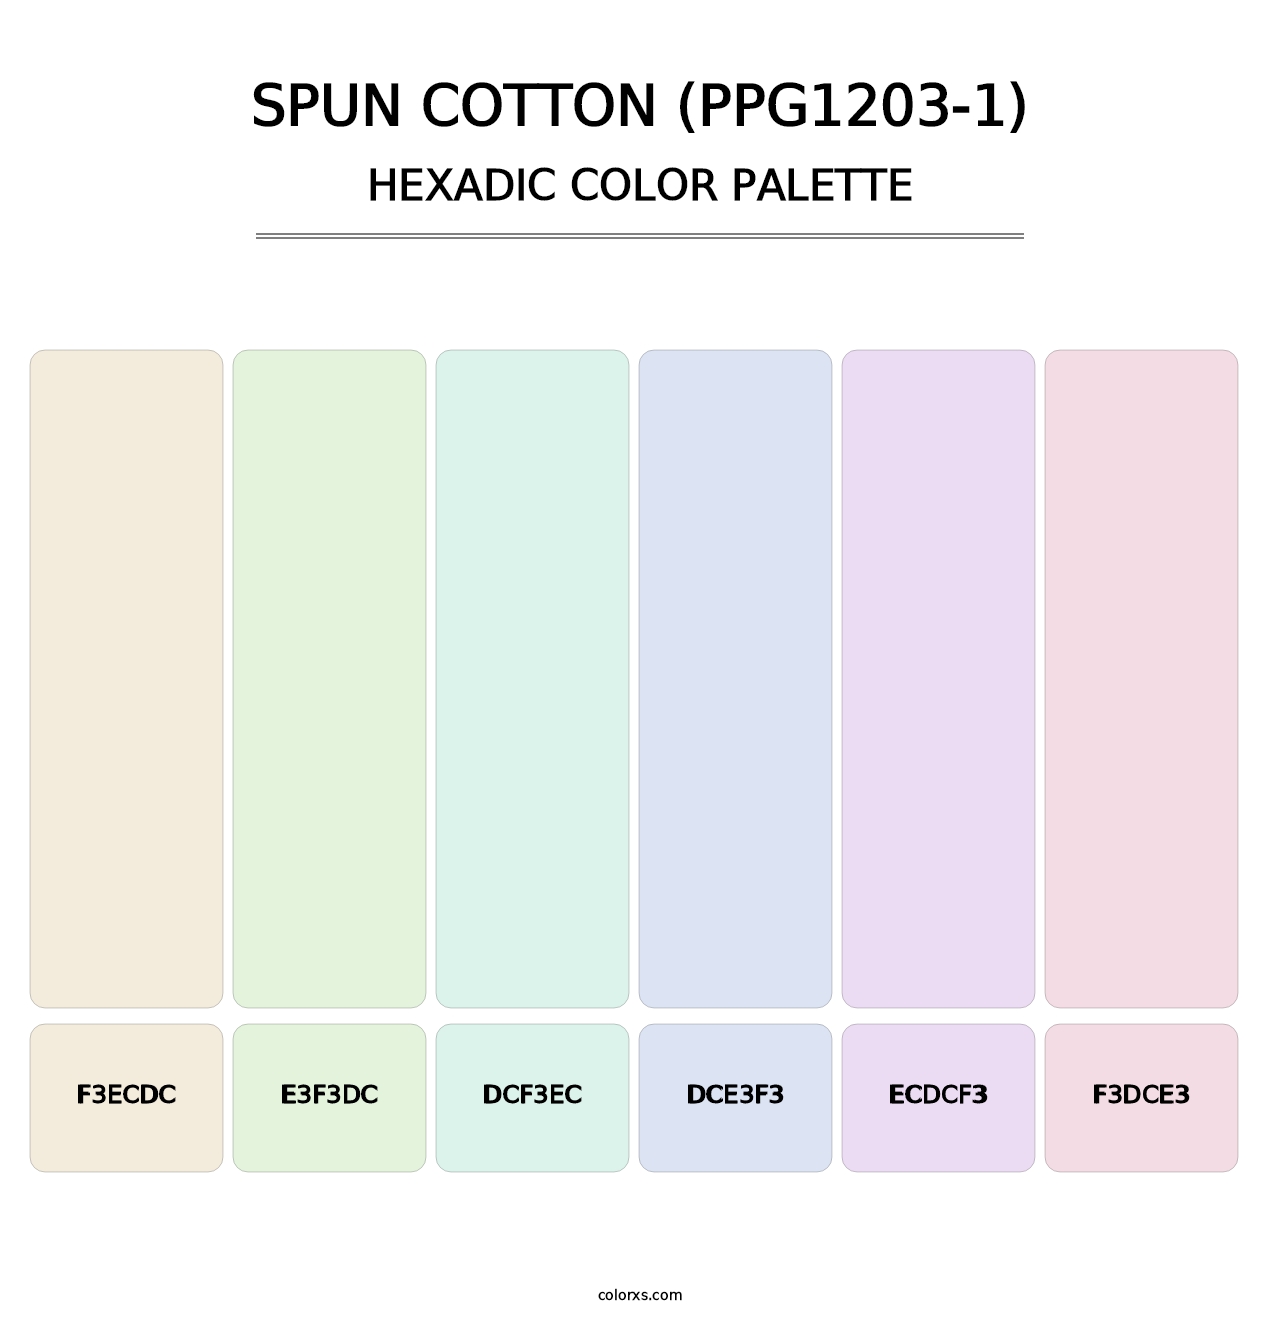 Spun Cotton (PPG1203-1) - Hexadic Color Palette